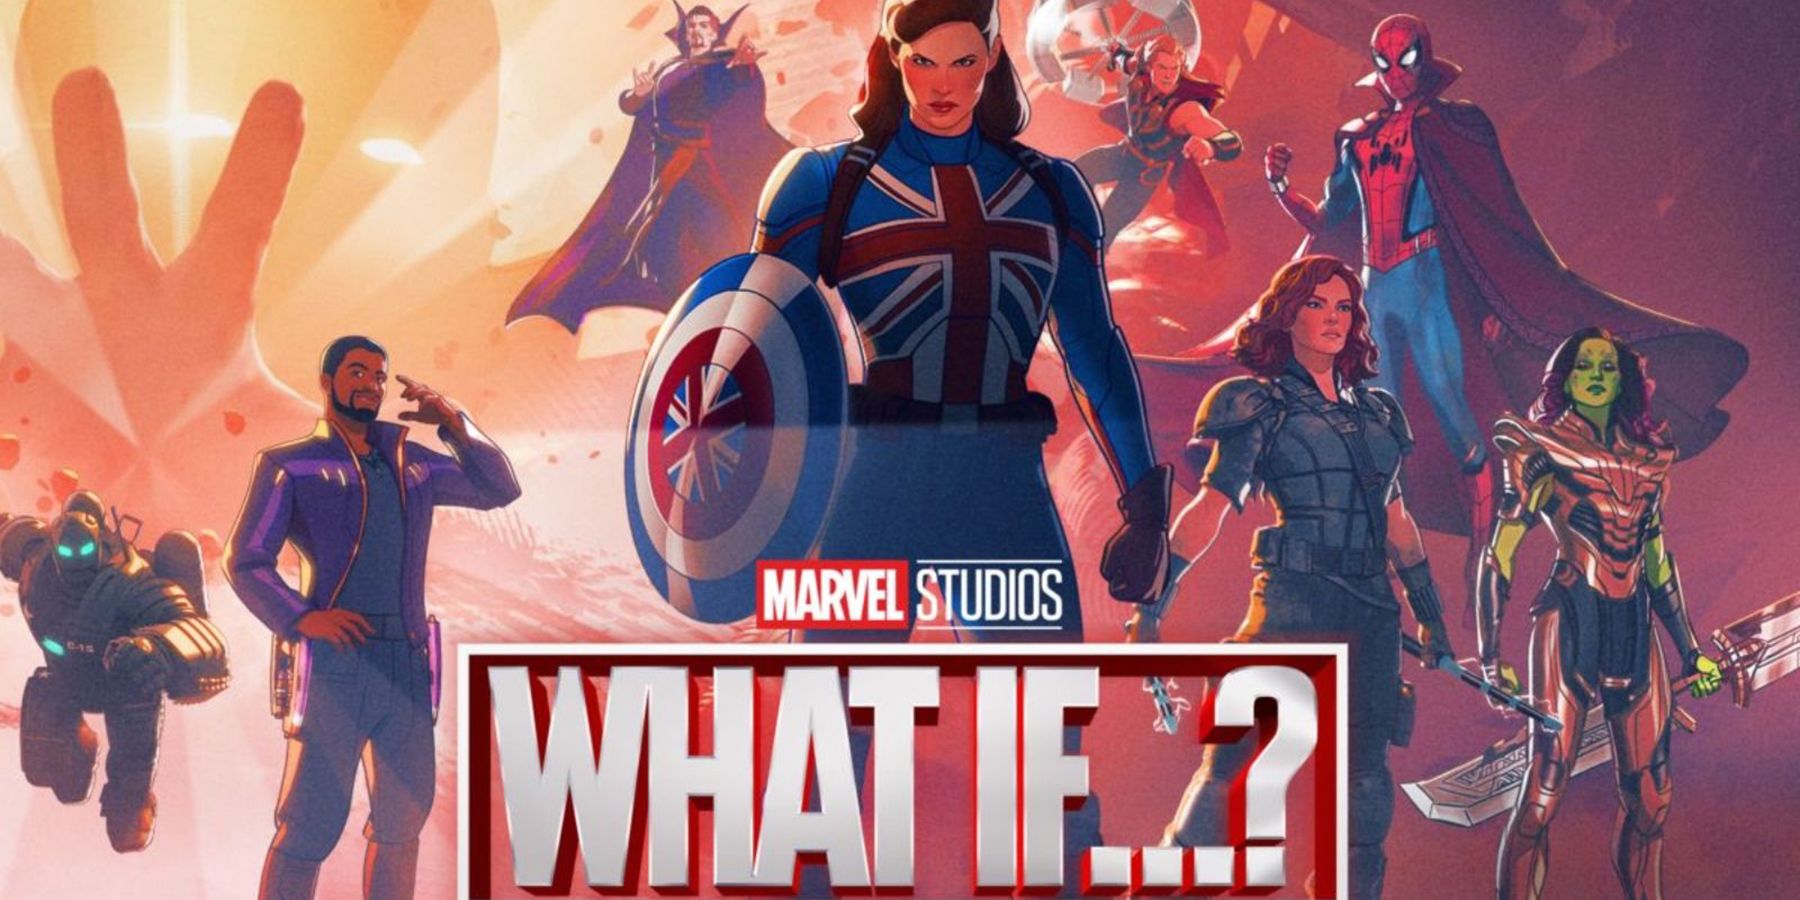 Τι θα γινόταν από τα Marvel Studios; Τα επεισόδια ήταν μεγαλύτερα πριν από τον COVID-19